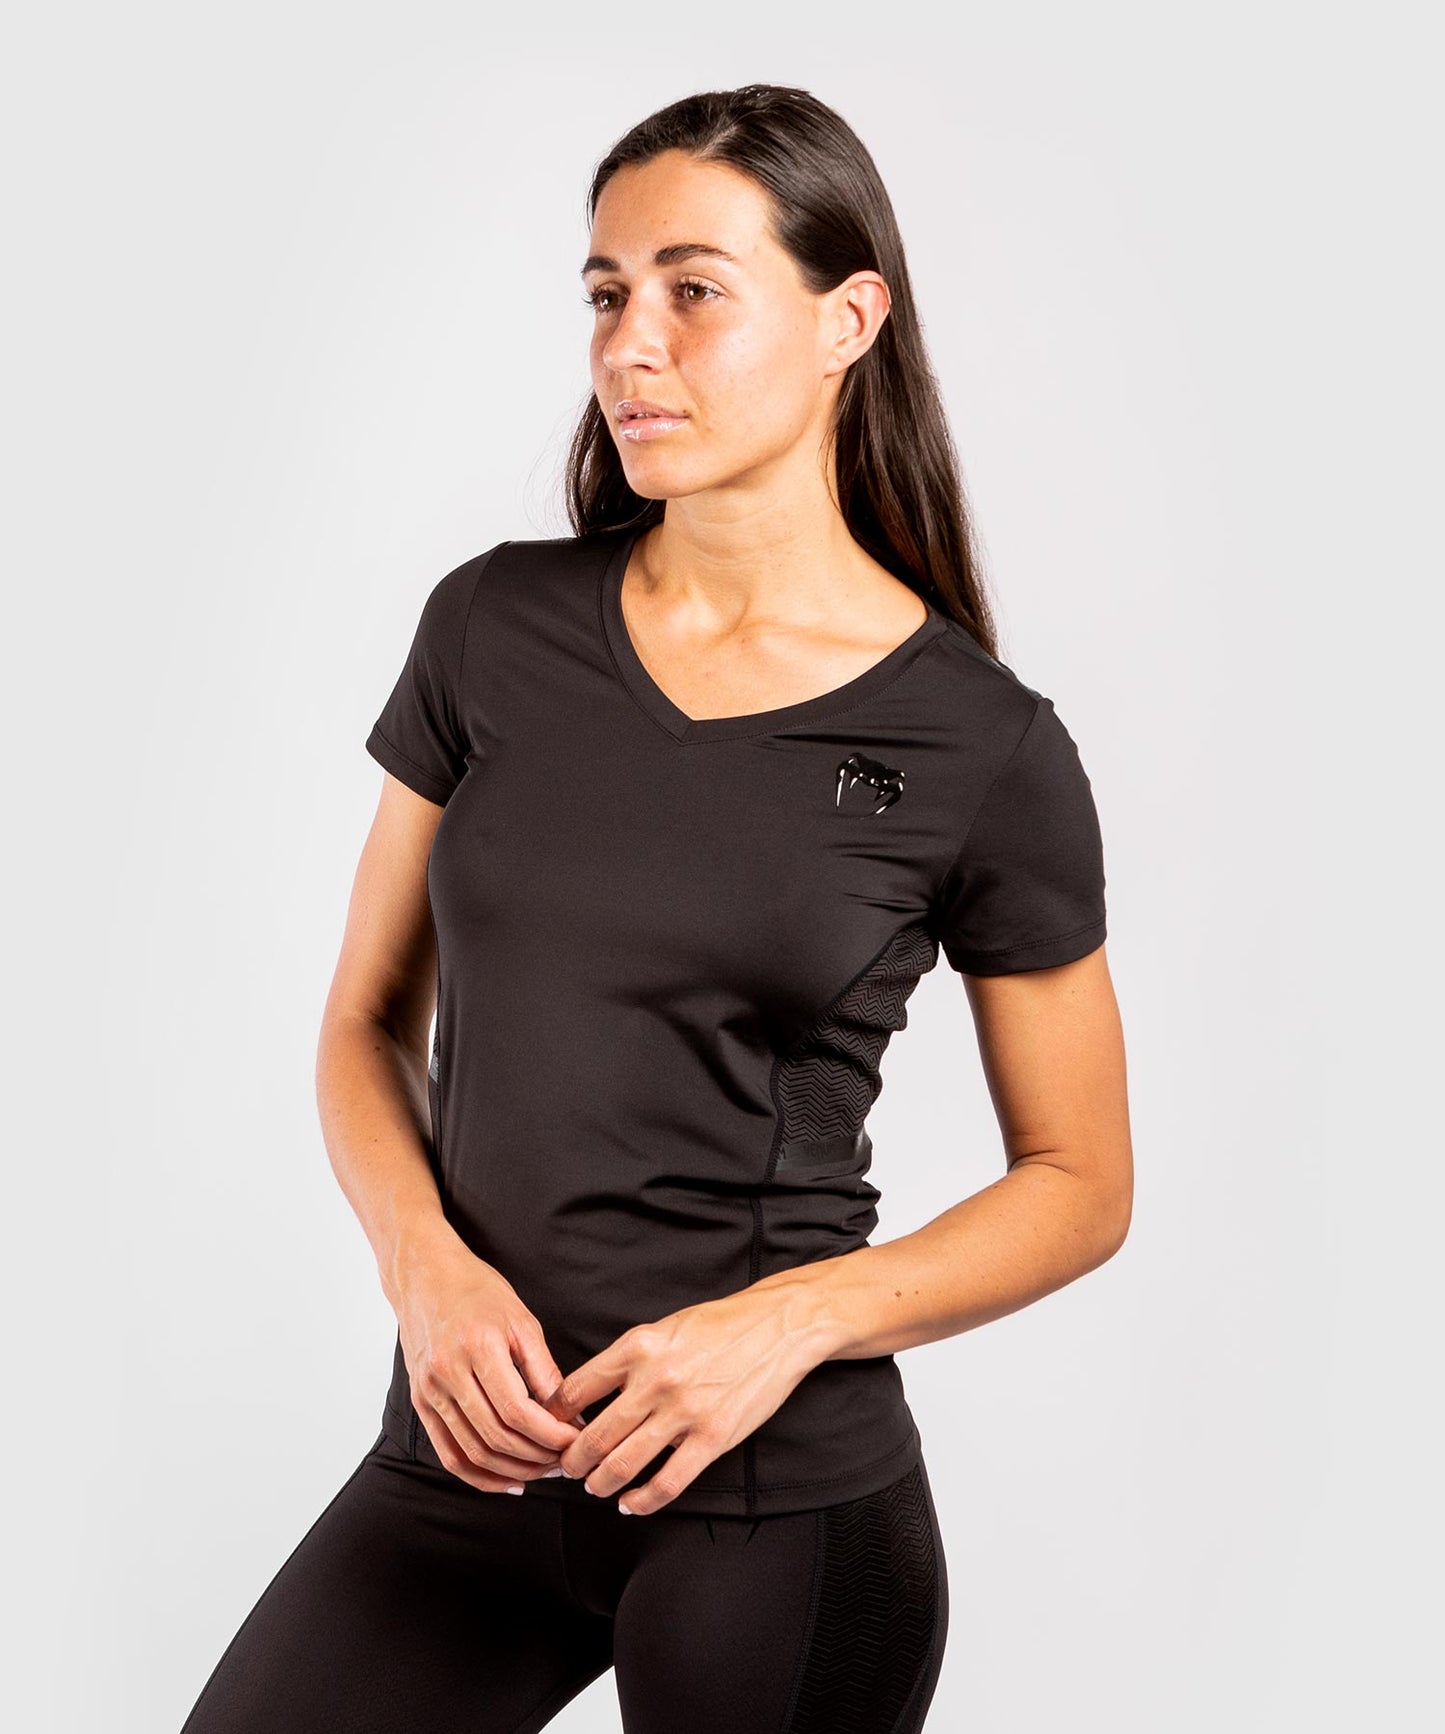 Venum G-Fit Dry-Tech T-shirt - For Women - Black/Black - Venum Asia